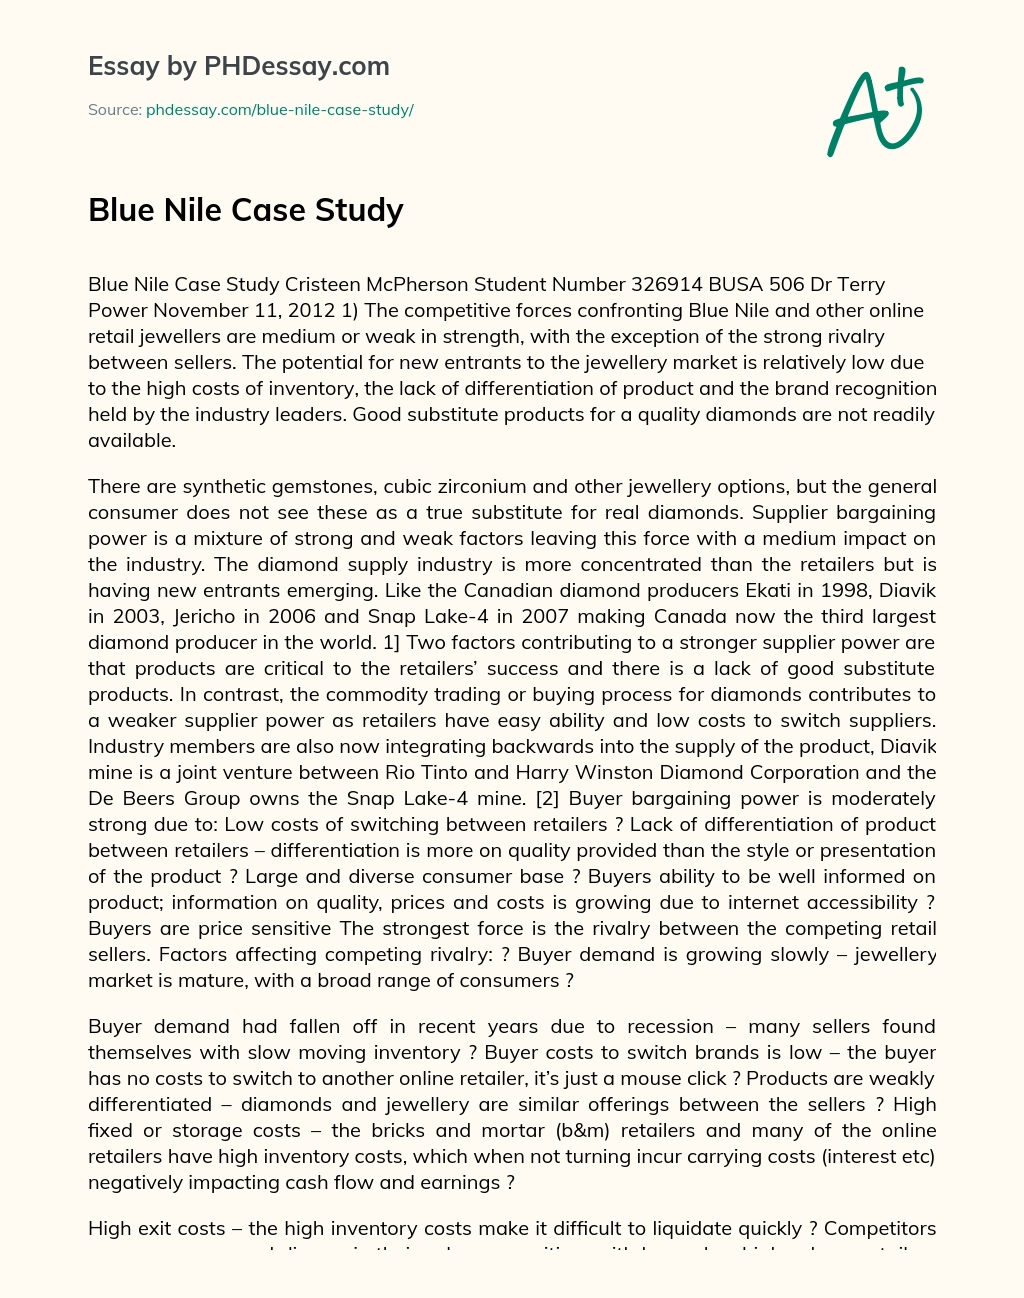 blue nile case analysis summary